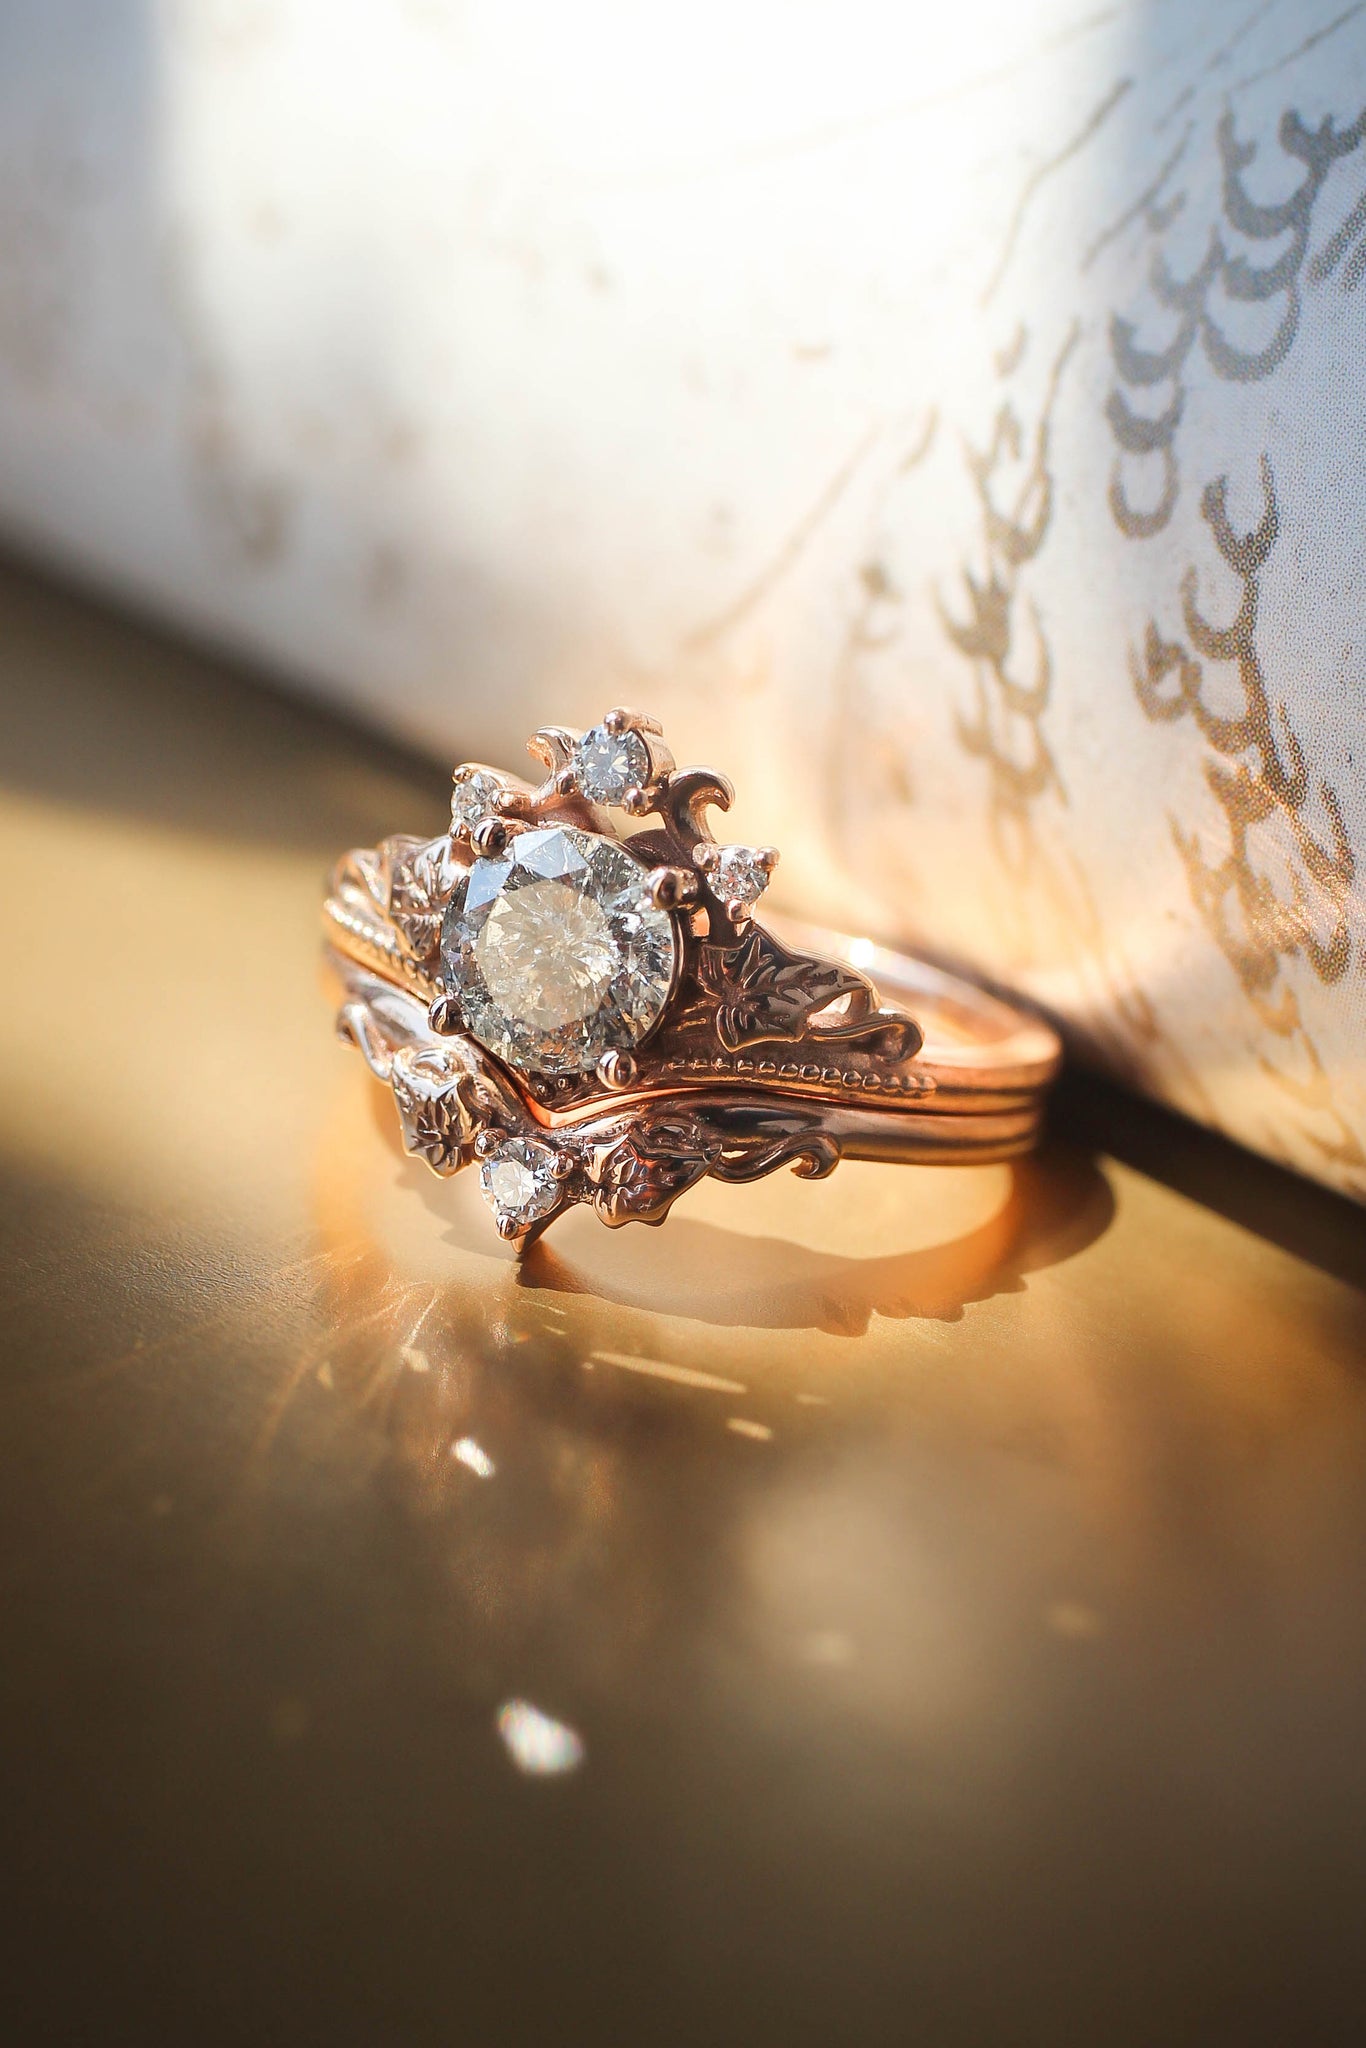 Ariadne | bridal ring set, 6 mm central gemstone - Eden Garden Jewelry™